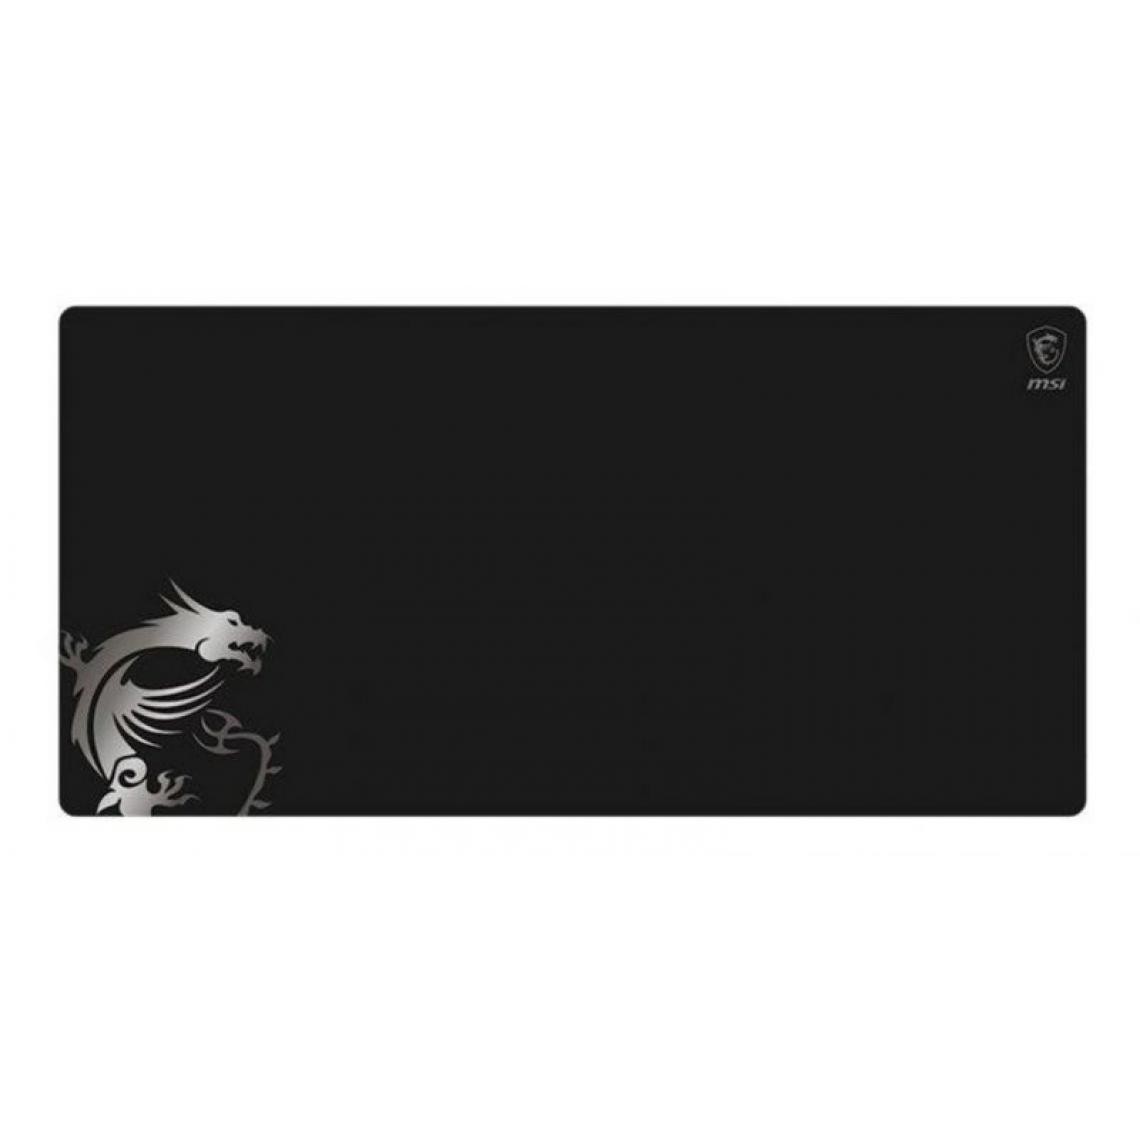 Msi - Tapis de souris MSI AGILITY GD80 120x60 cm, noir - Tapis de souris